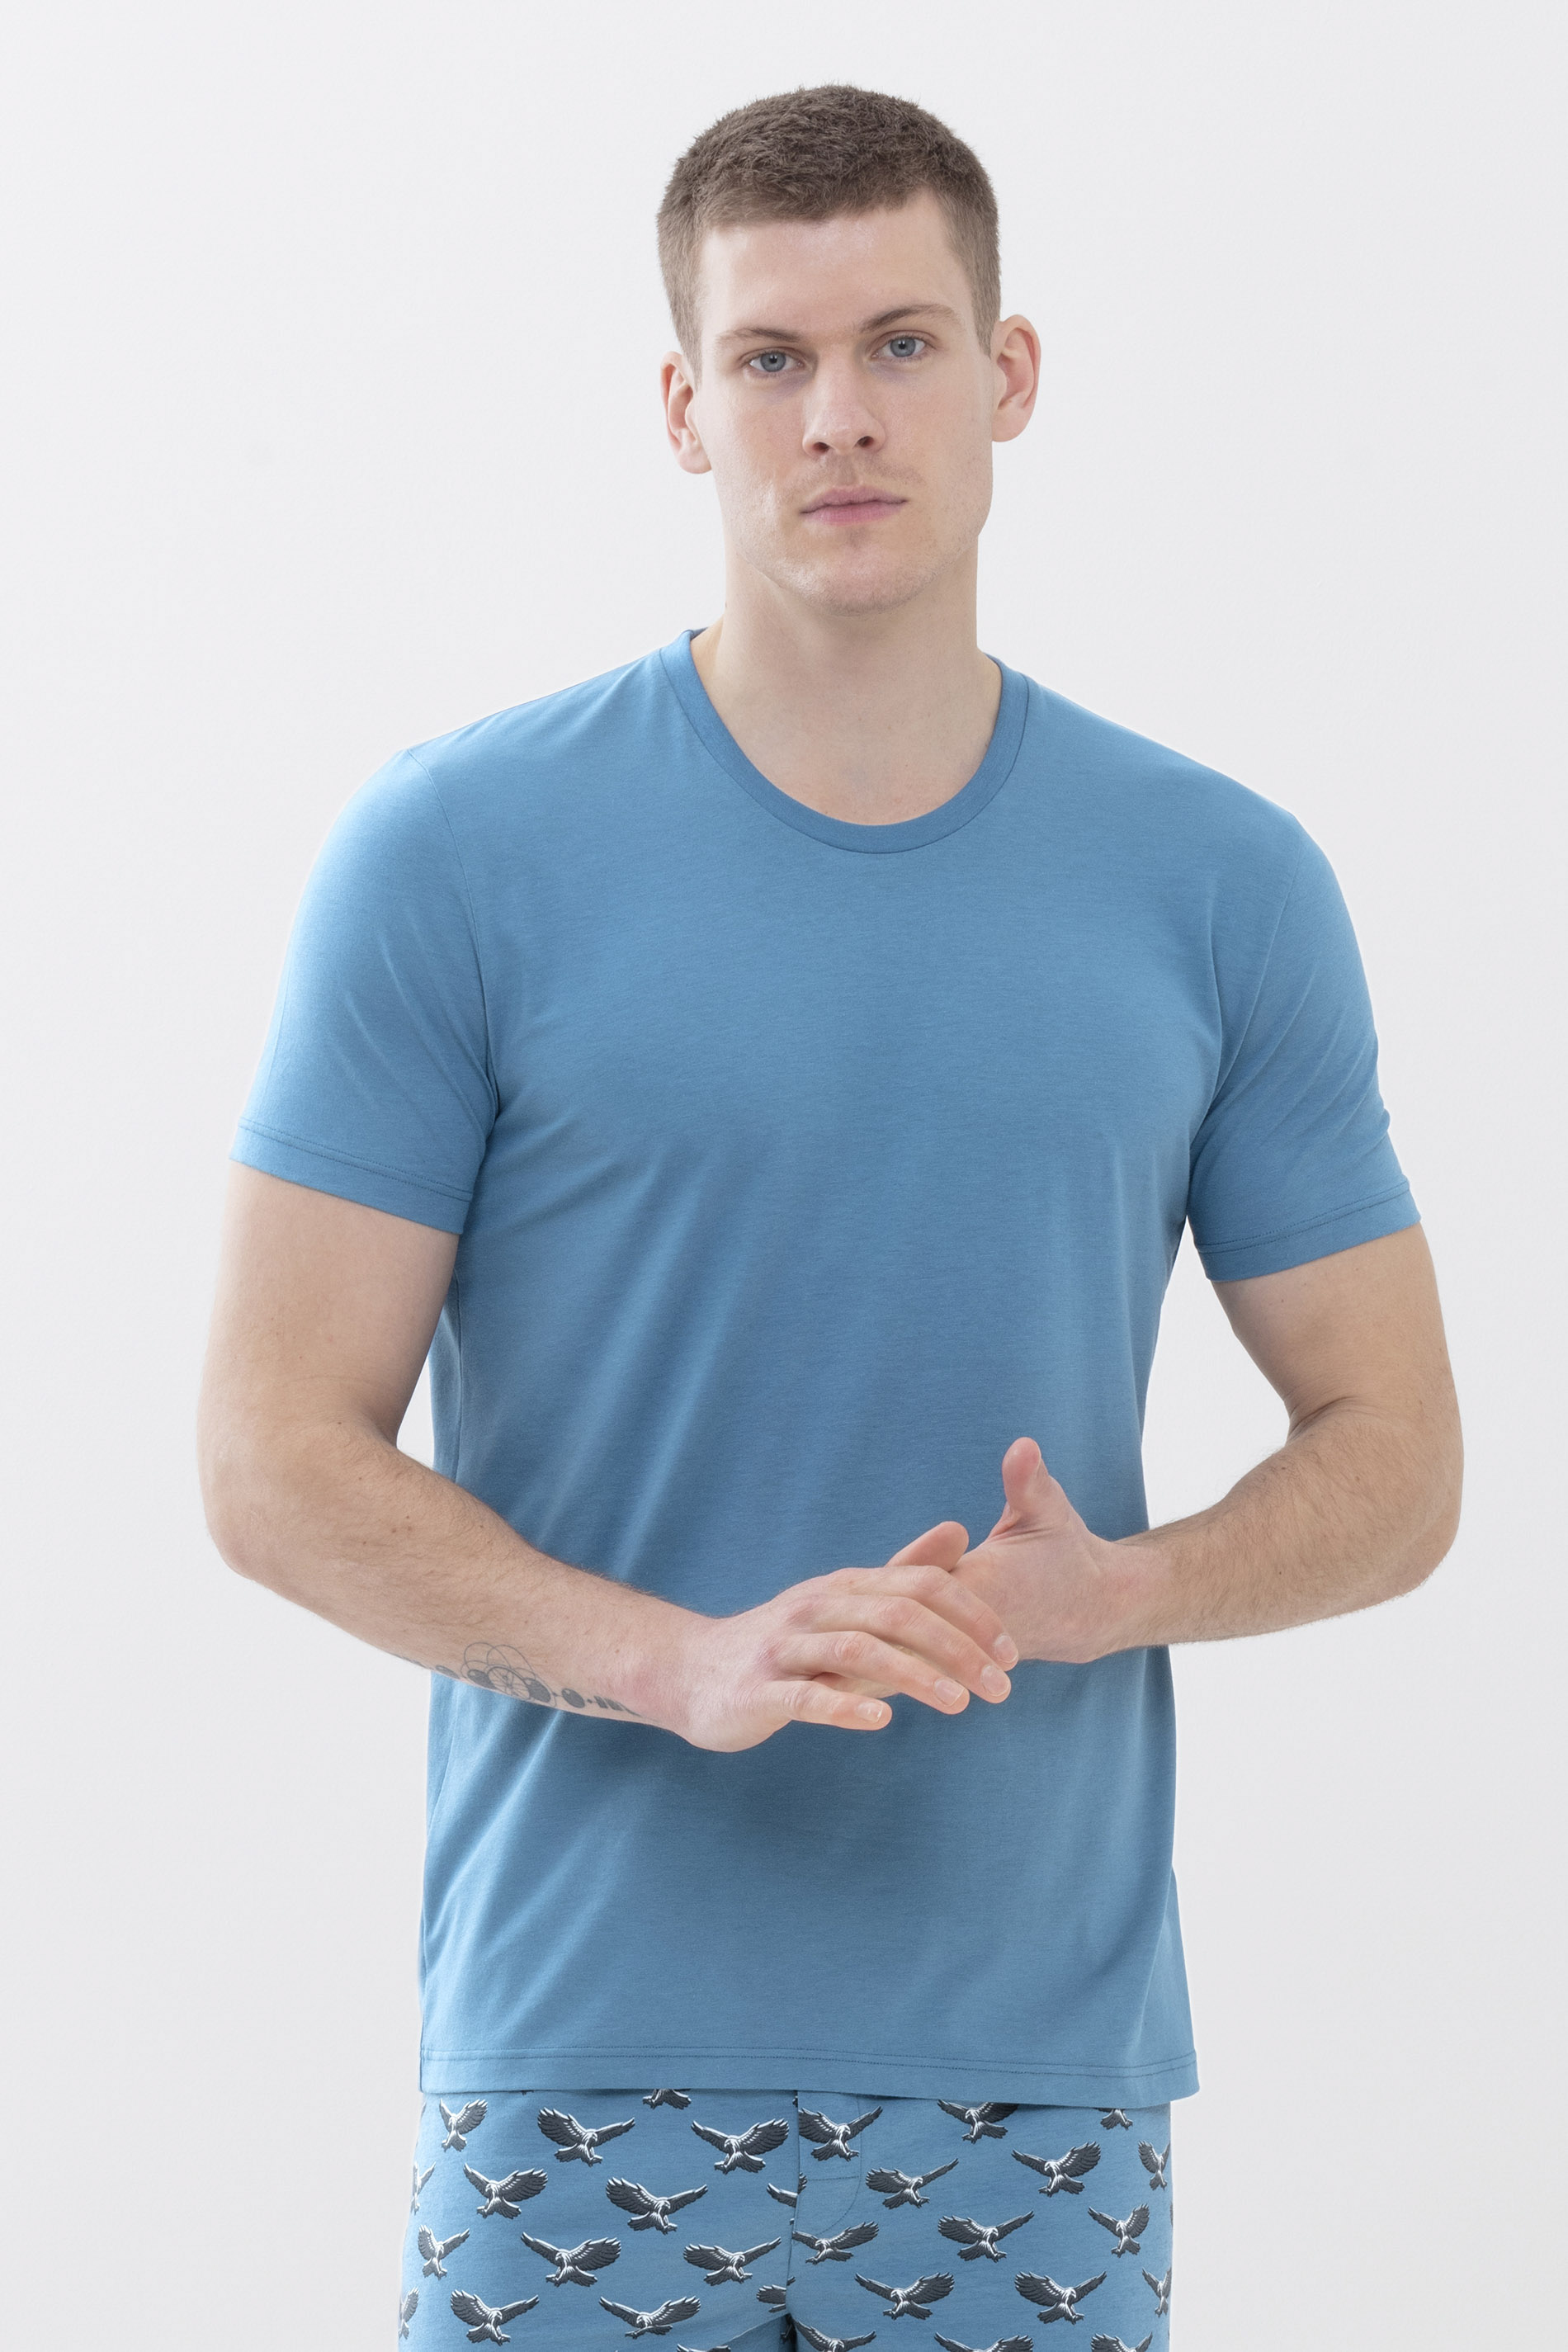 T-shirt Yale Blue Dry Cotton Colour Front View | mey®